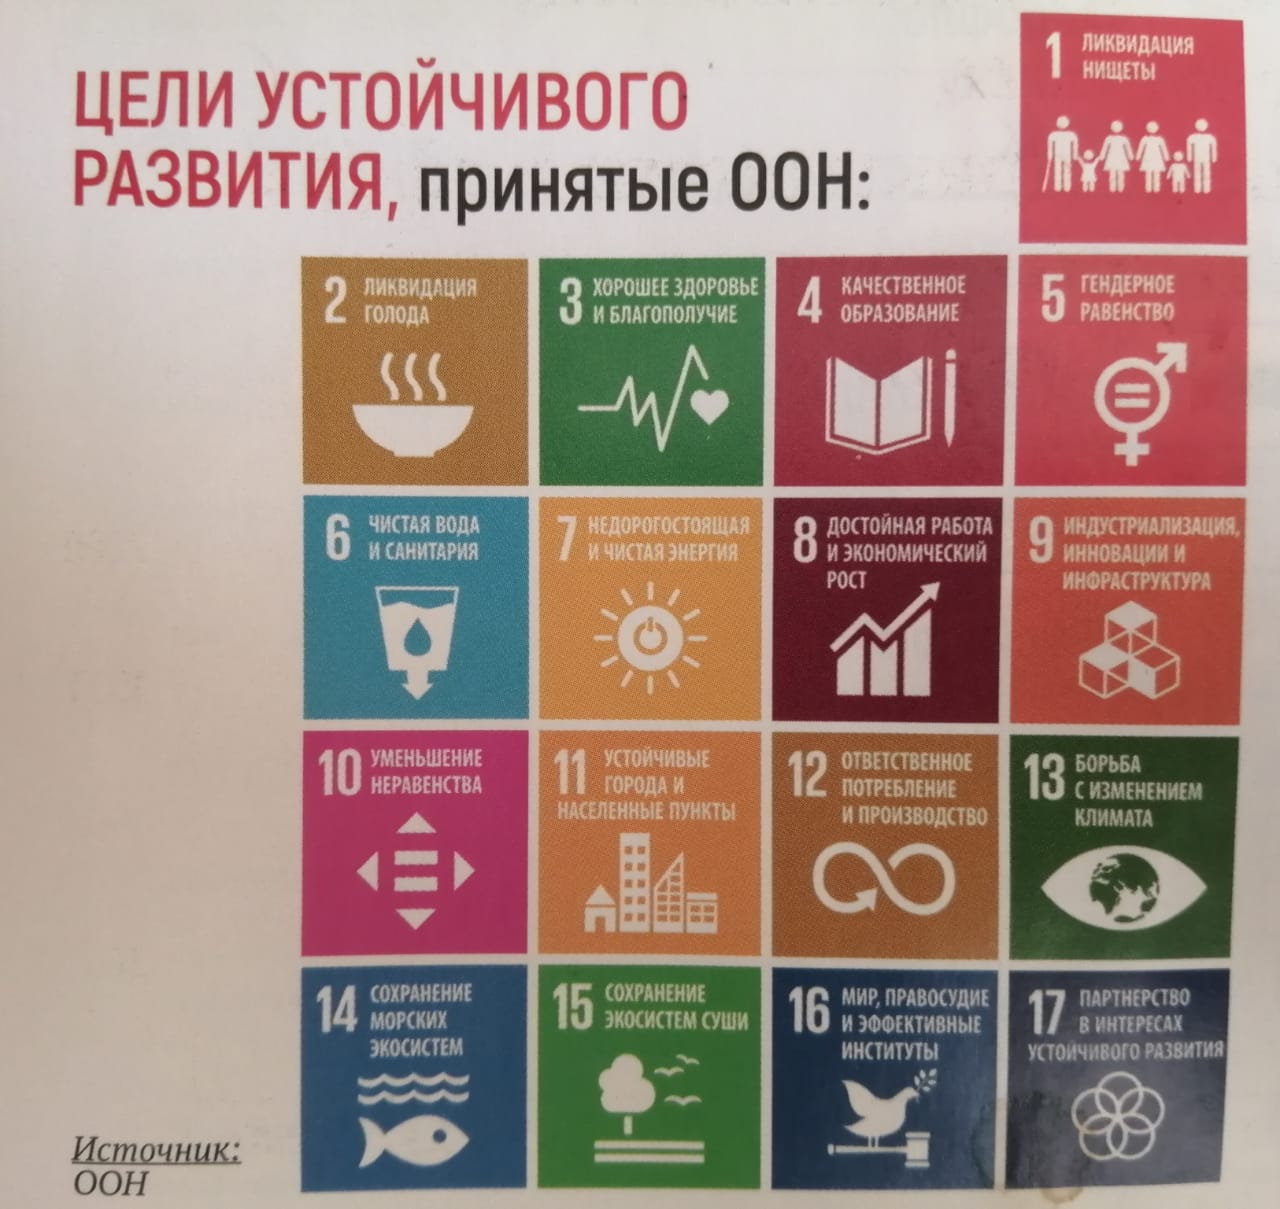 17 устойчивых целей оон. Цели устойчивого развития. Цели устойчивого развития ООН. 17 Целей устойчивого развития ООН. Цели устойчивого развития ООН 2015-2030.